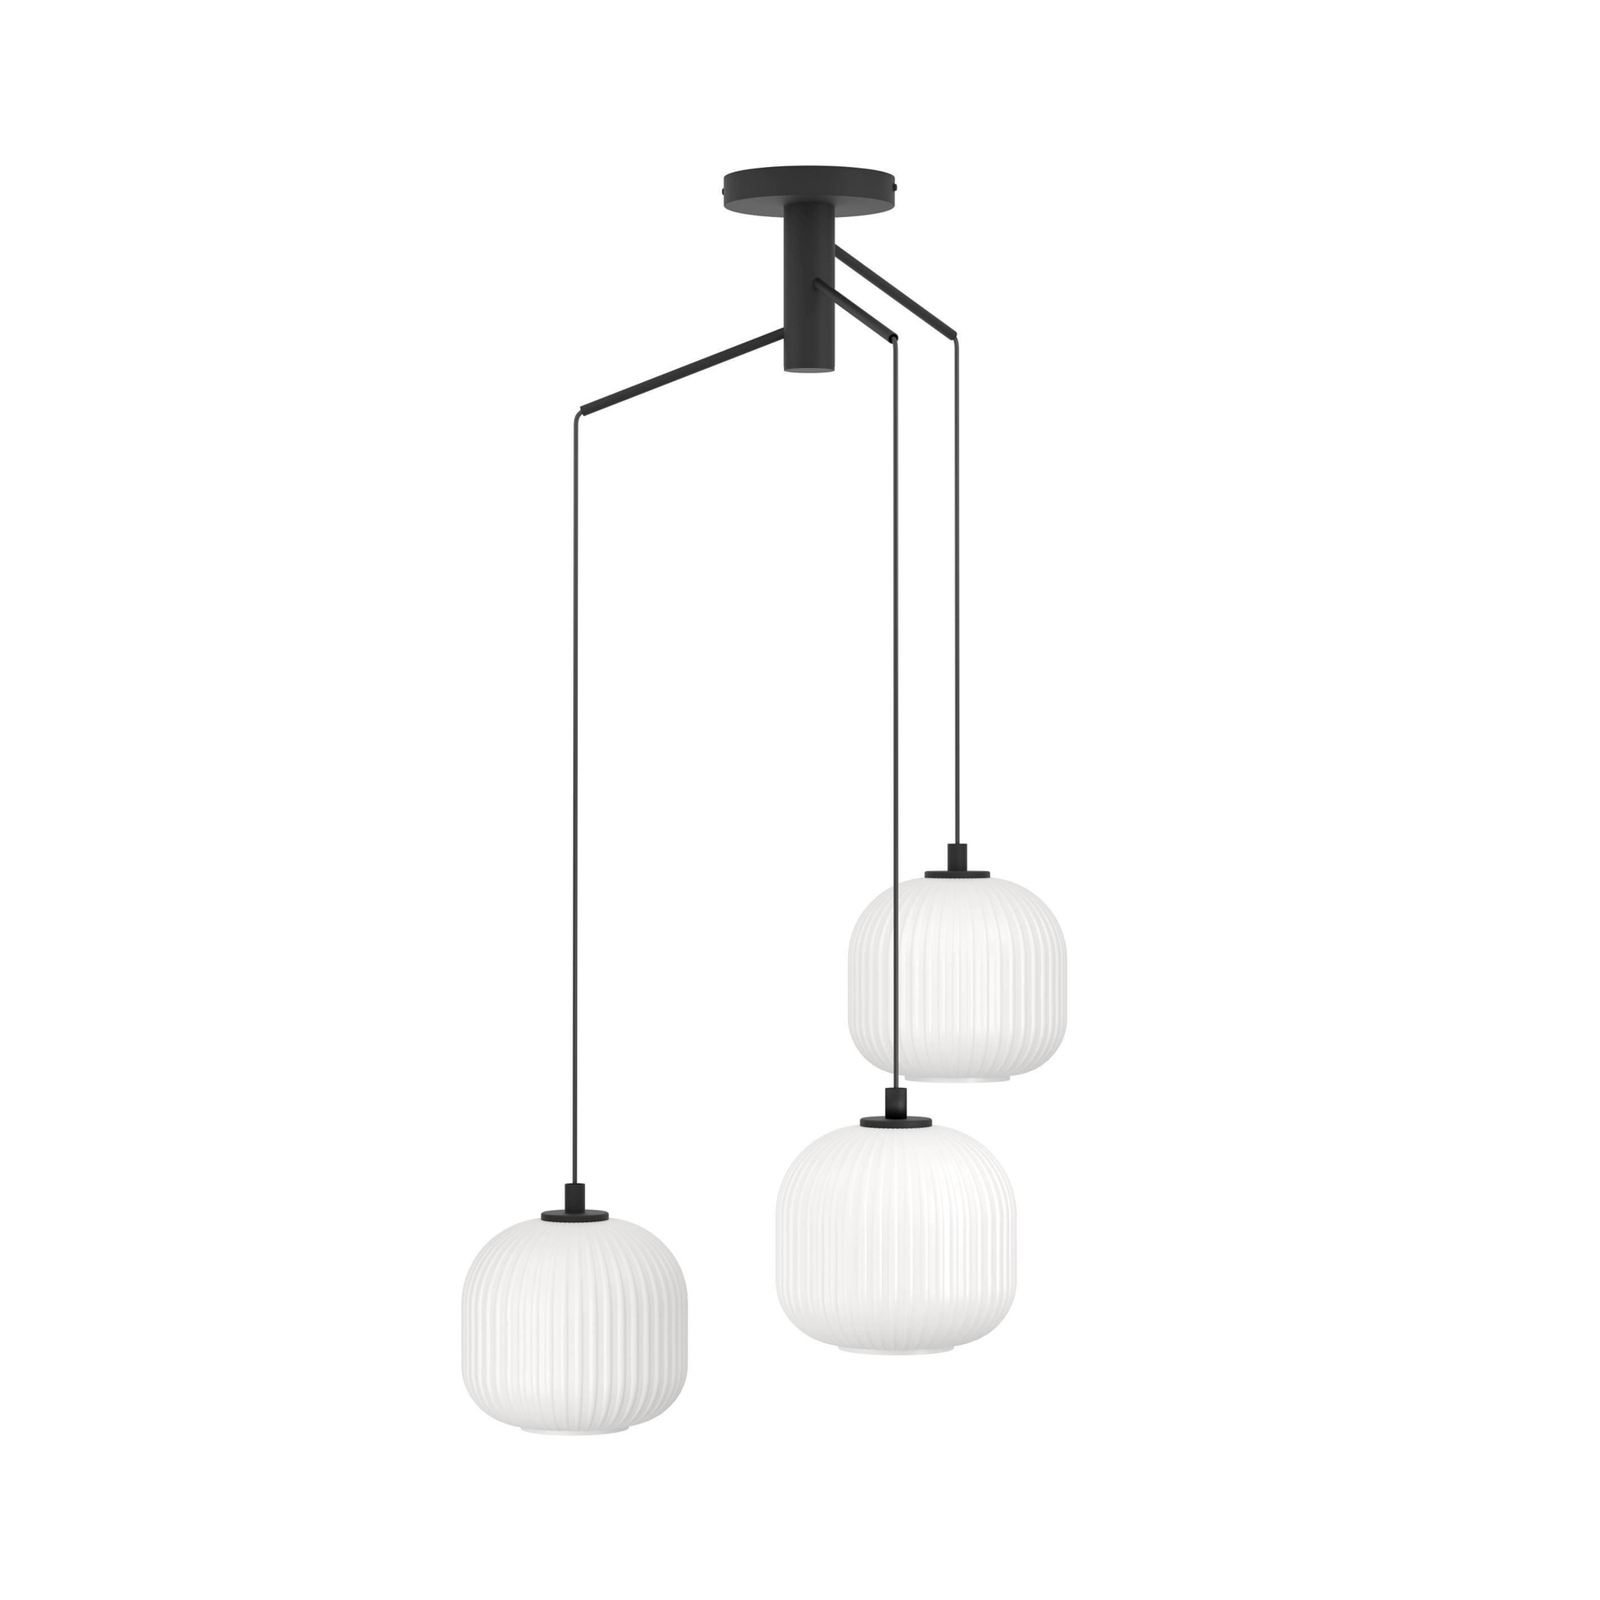 Mantunalle pendant light, Ø 62 cm, black/white, 3-bulb.